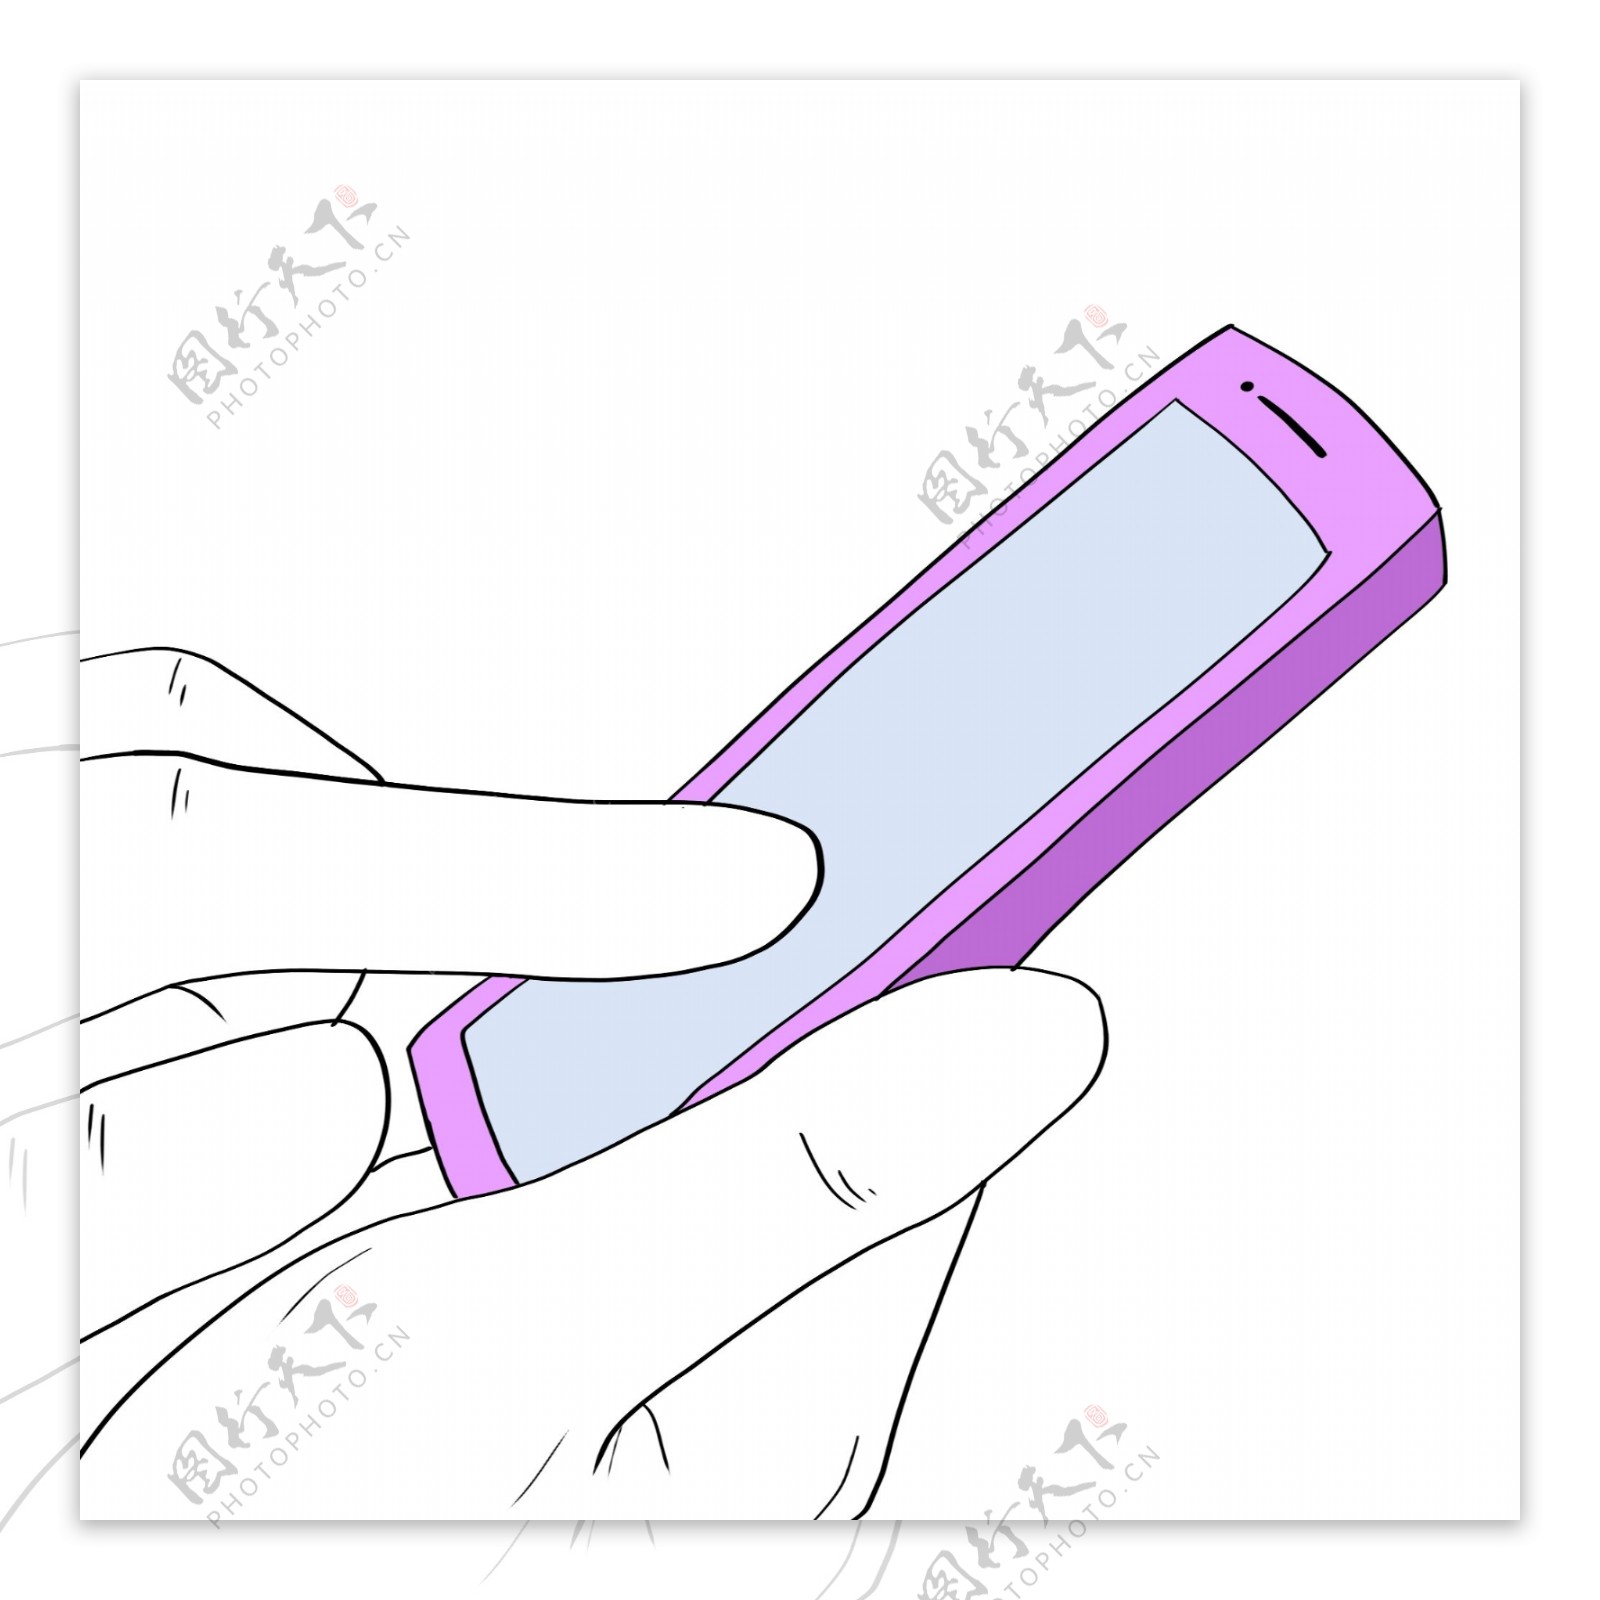 线描紫色的手机手绘插画